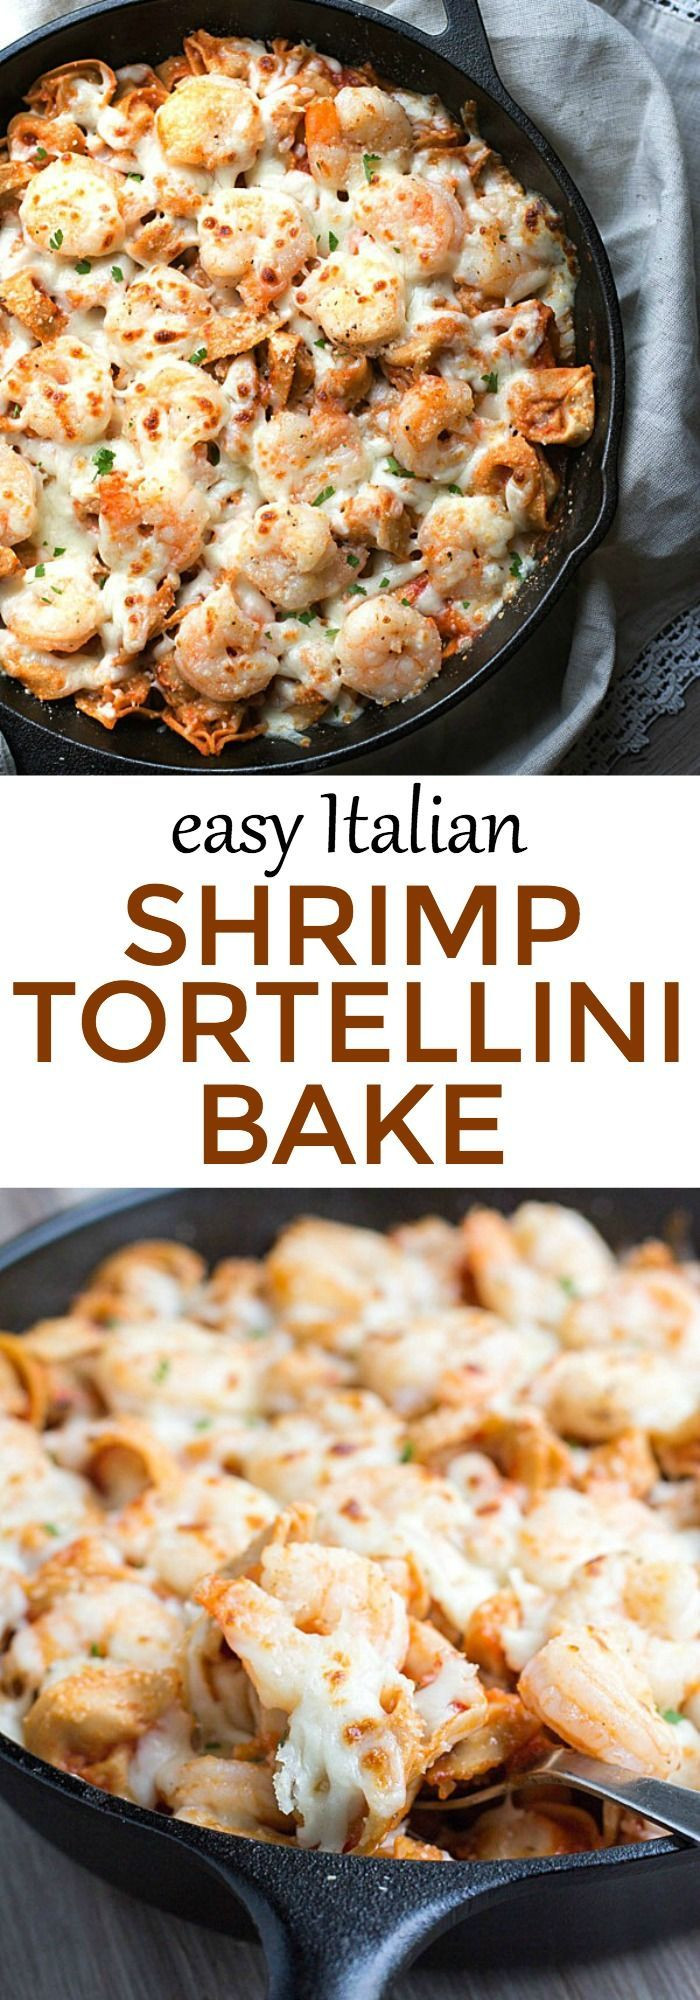 Easy Italian Dinner Recipes
 Dinner in under 30 minutes Easy Italian Shrimp